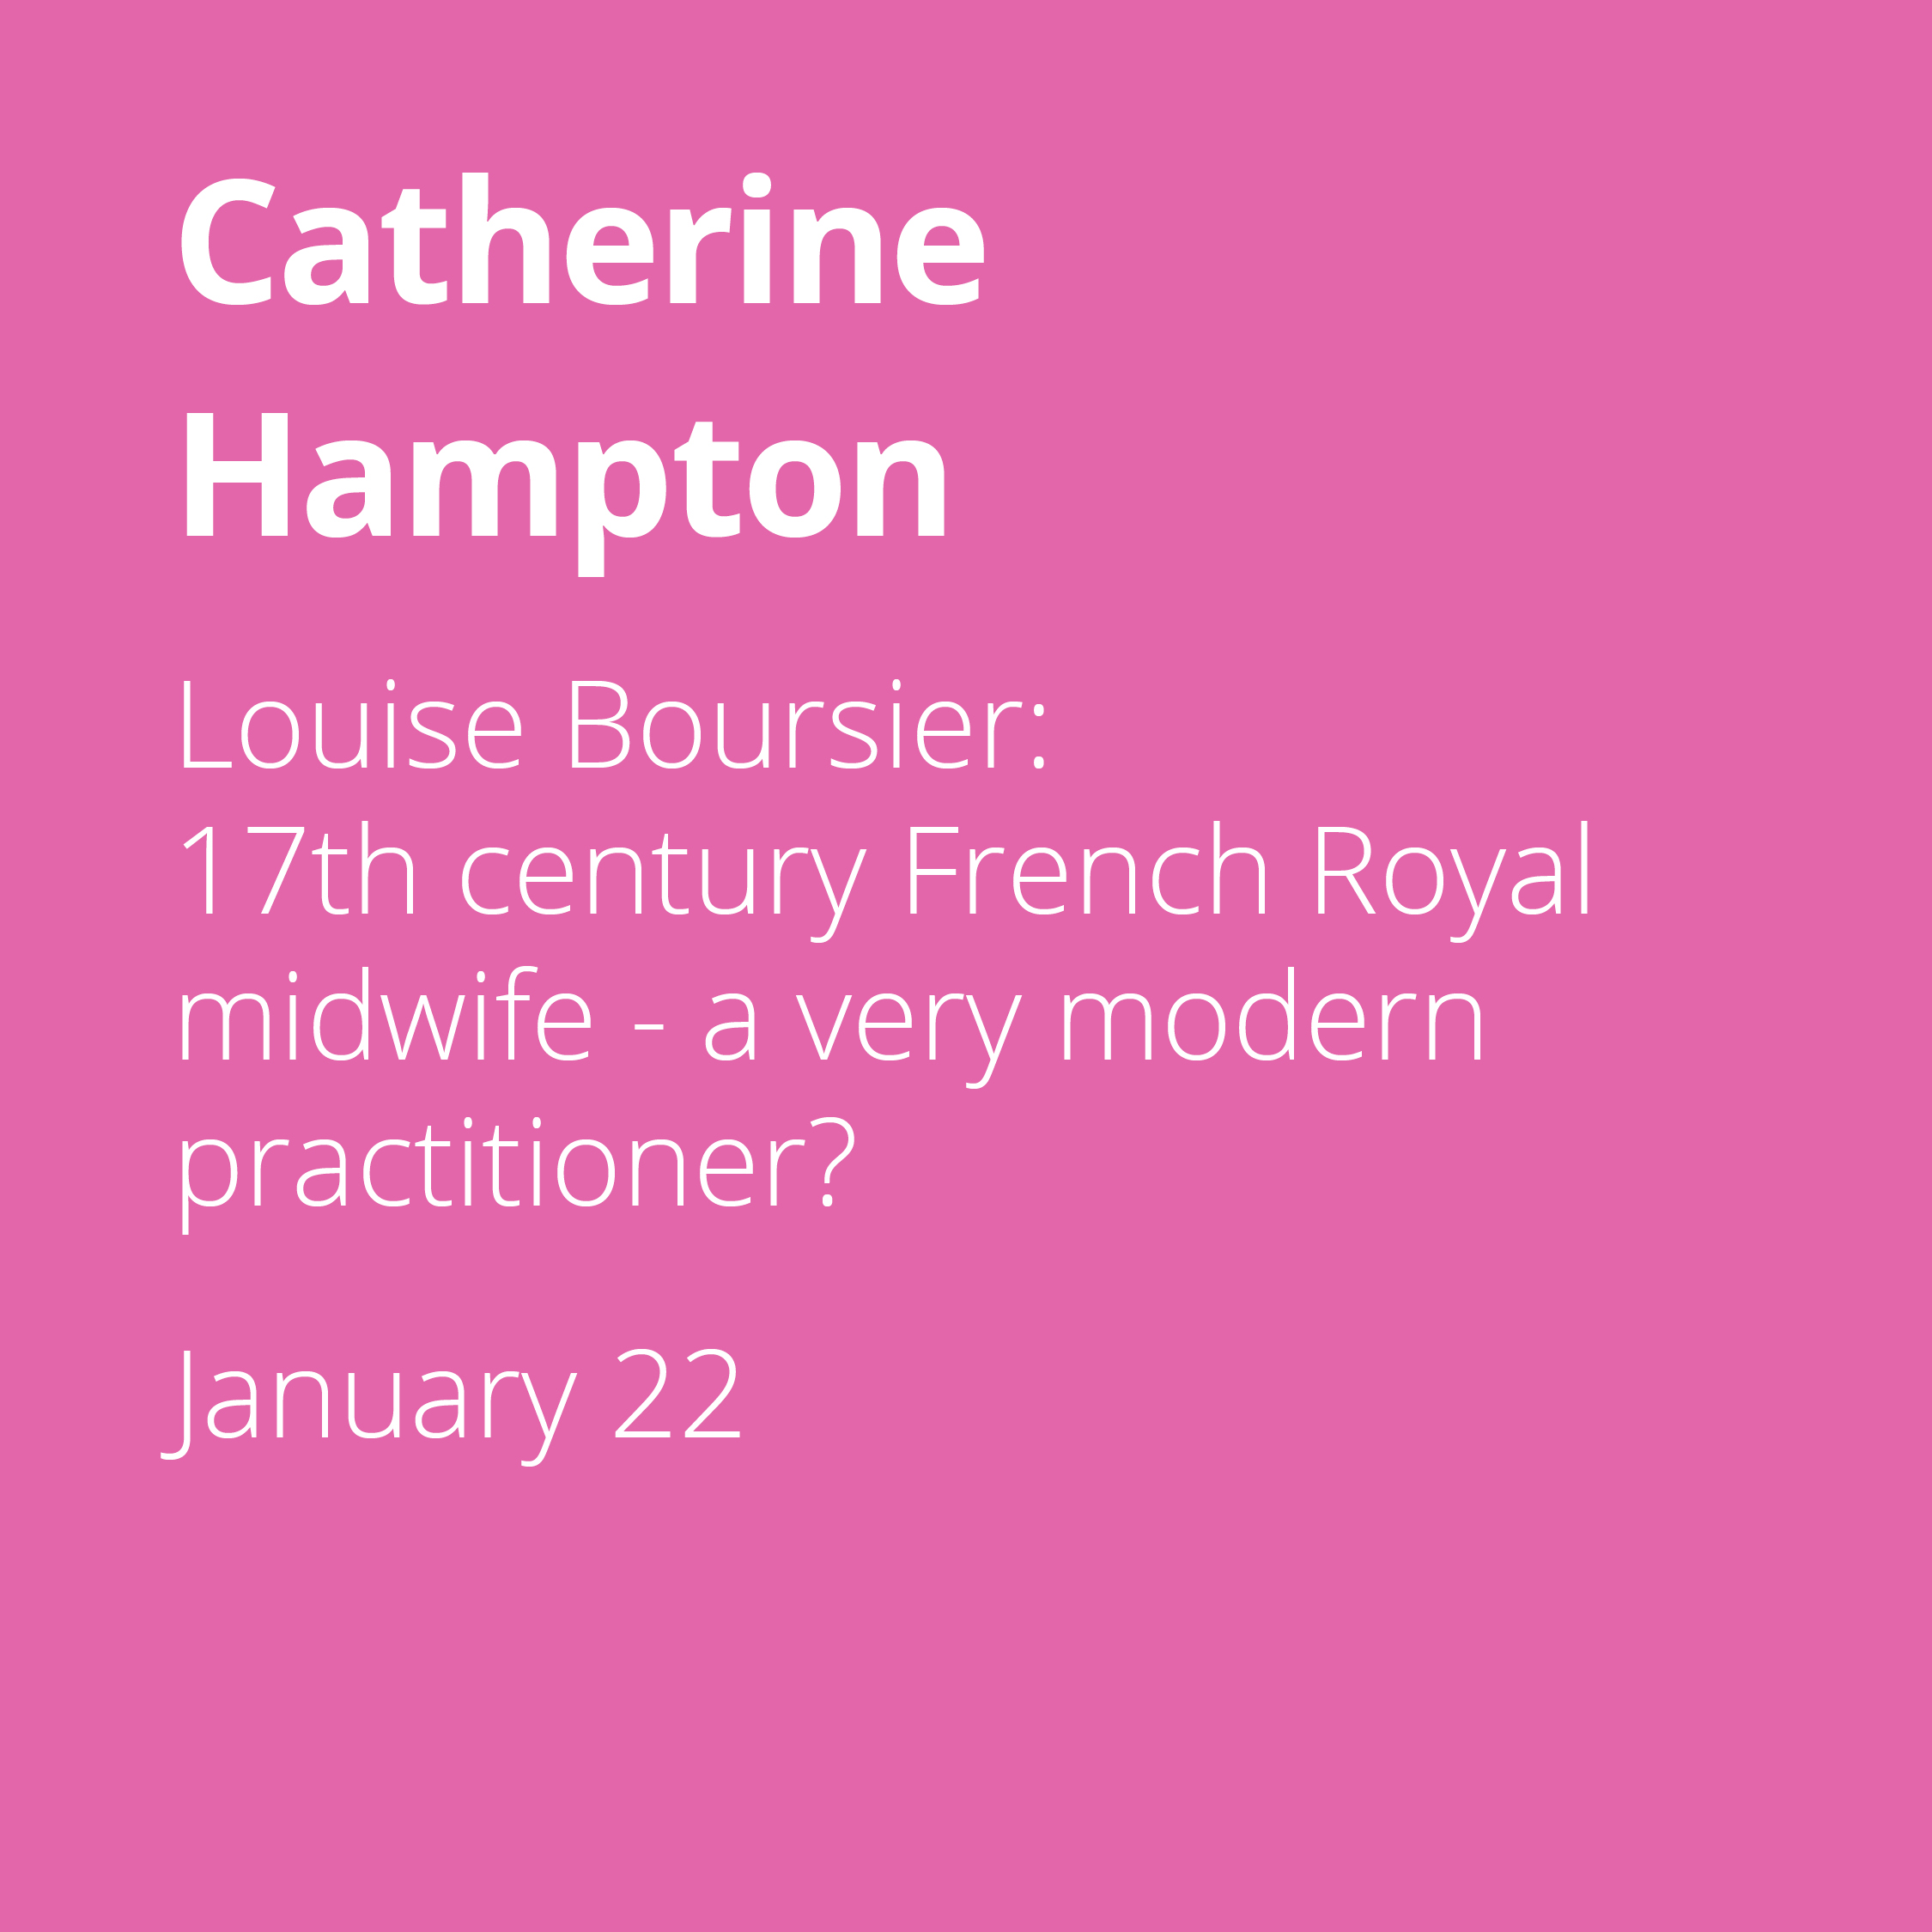 Catherine Hampton